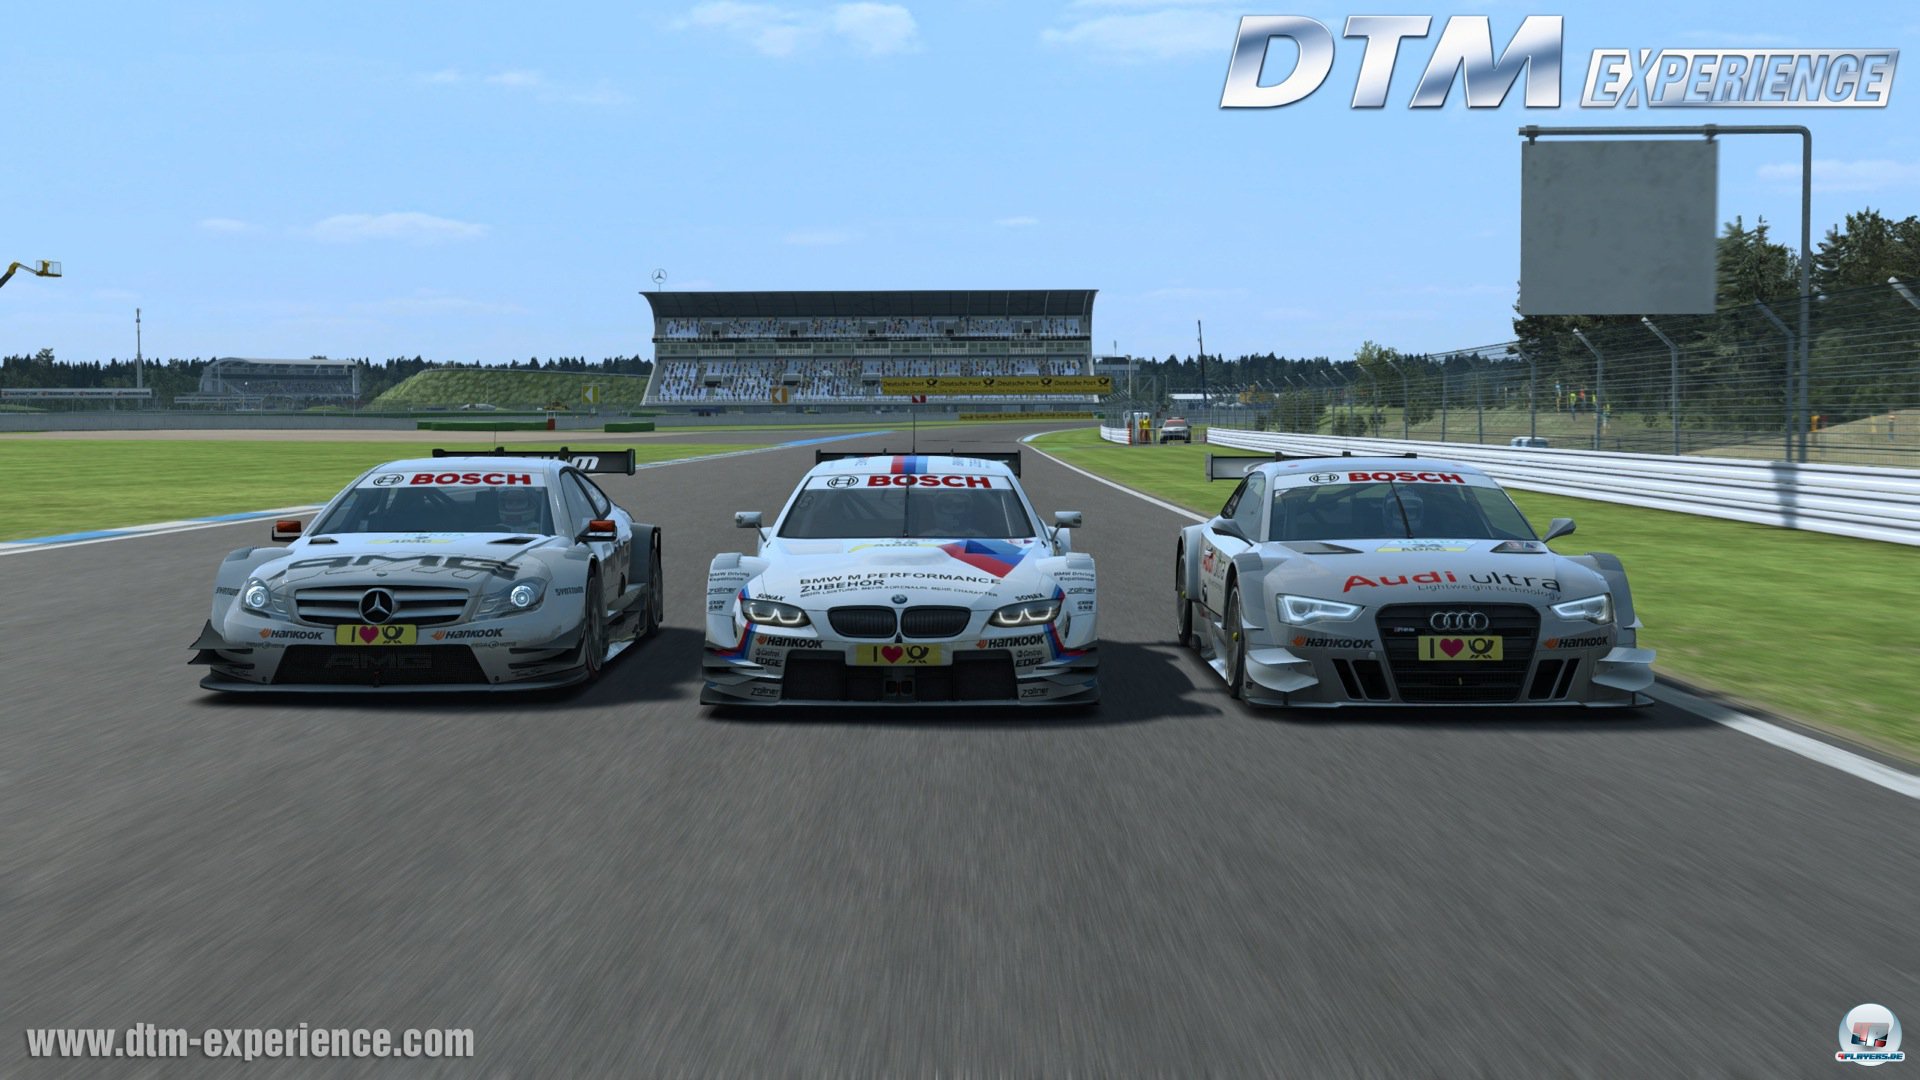 In der DTM kämpfen Audi, BMW und Mercedes um die Tourenwagen-Krone.